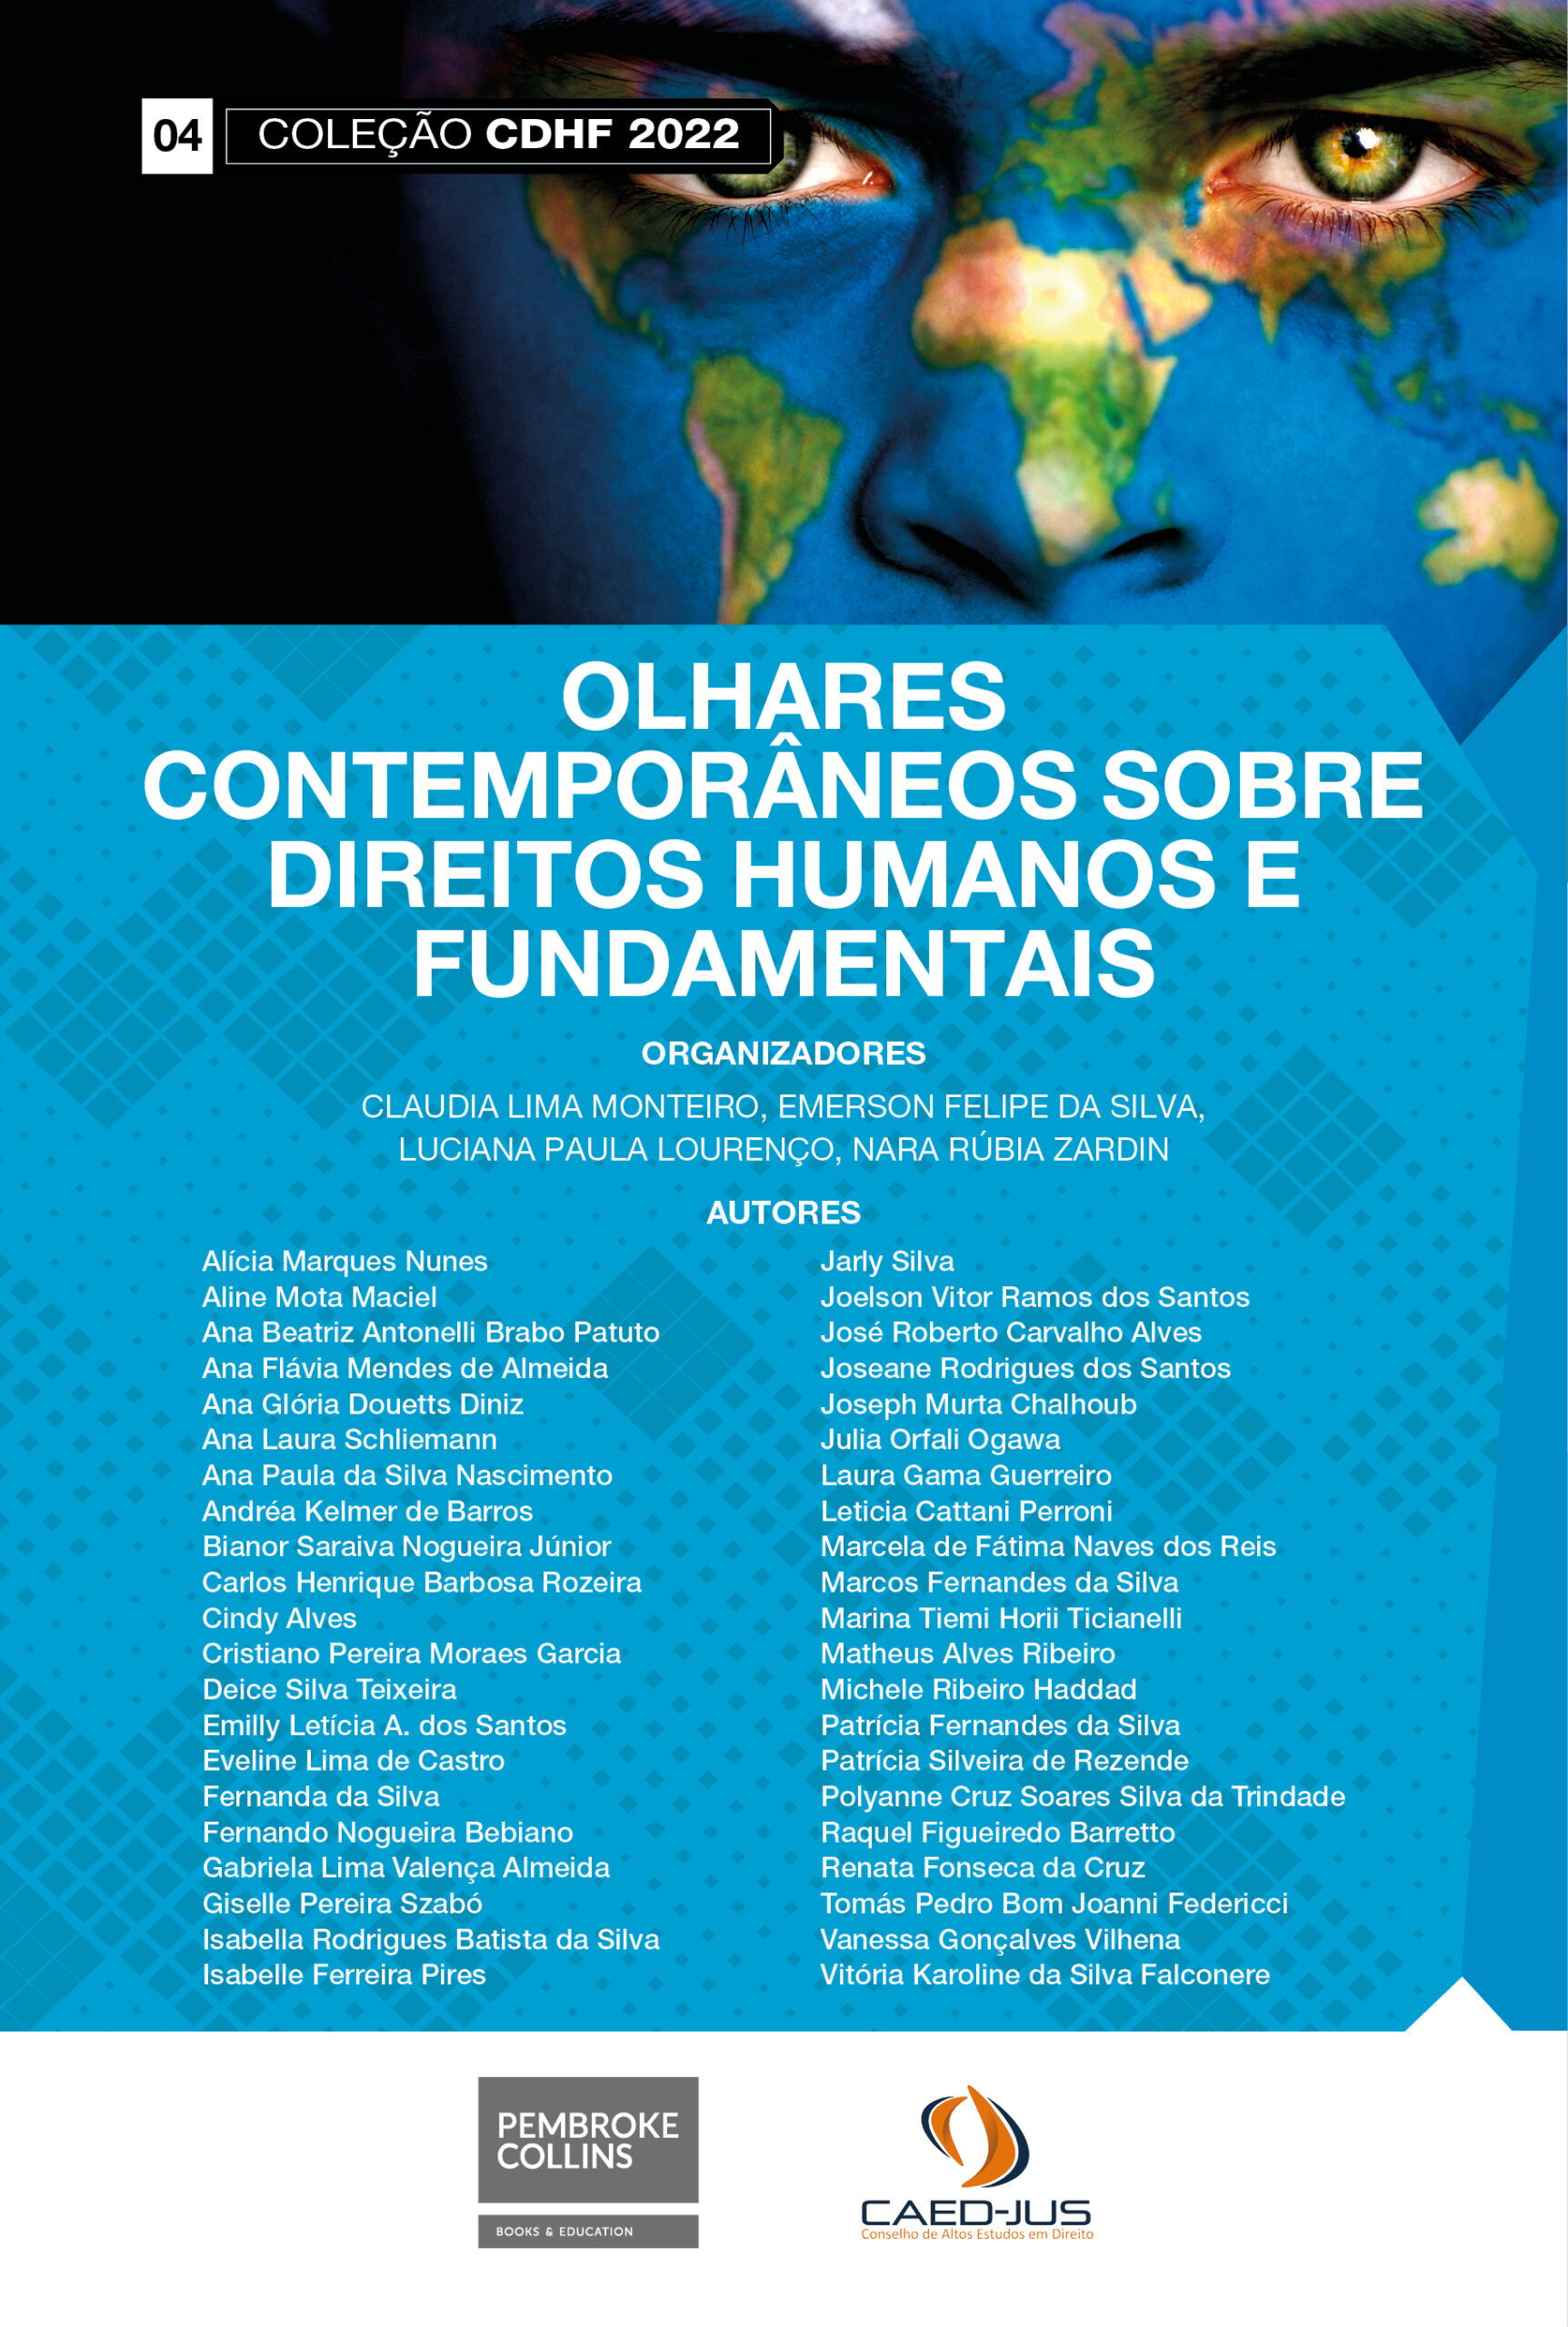 04-CAPA-CDHF2022-OLHARES-CONTEMPORANEOS-SOBRE-DIREITOS-HUMANOS-E-FUNDAMENTAIS